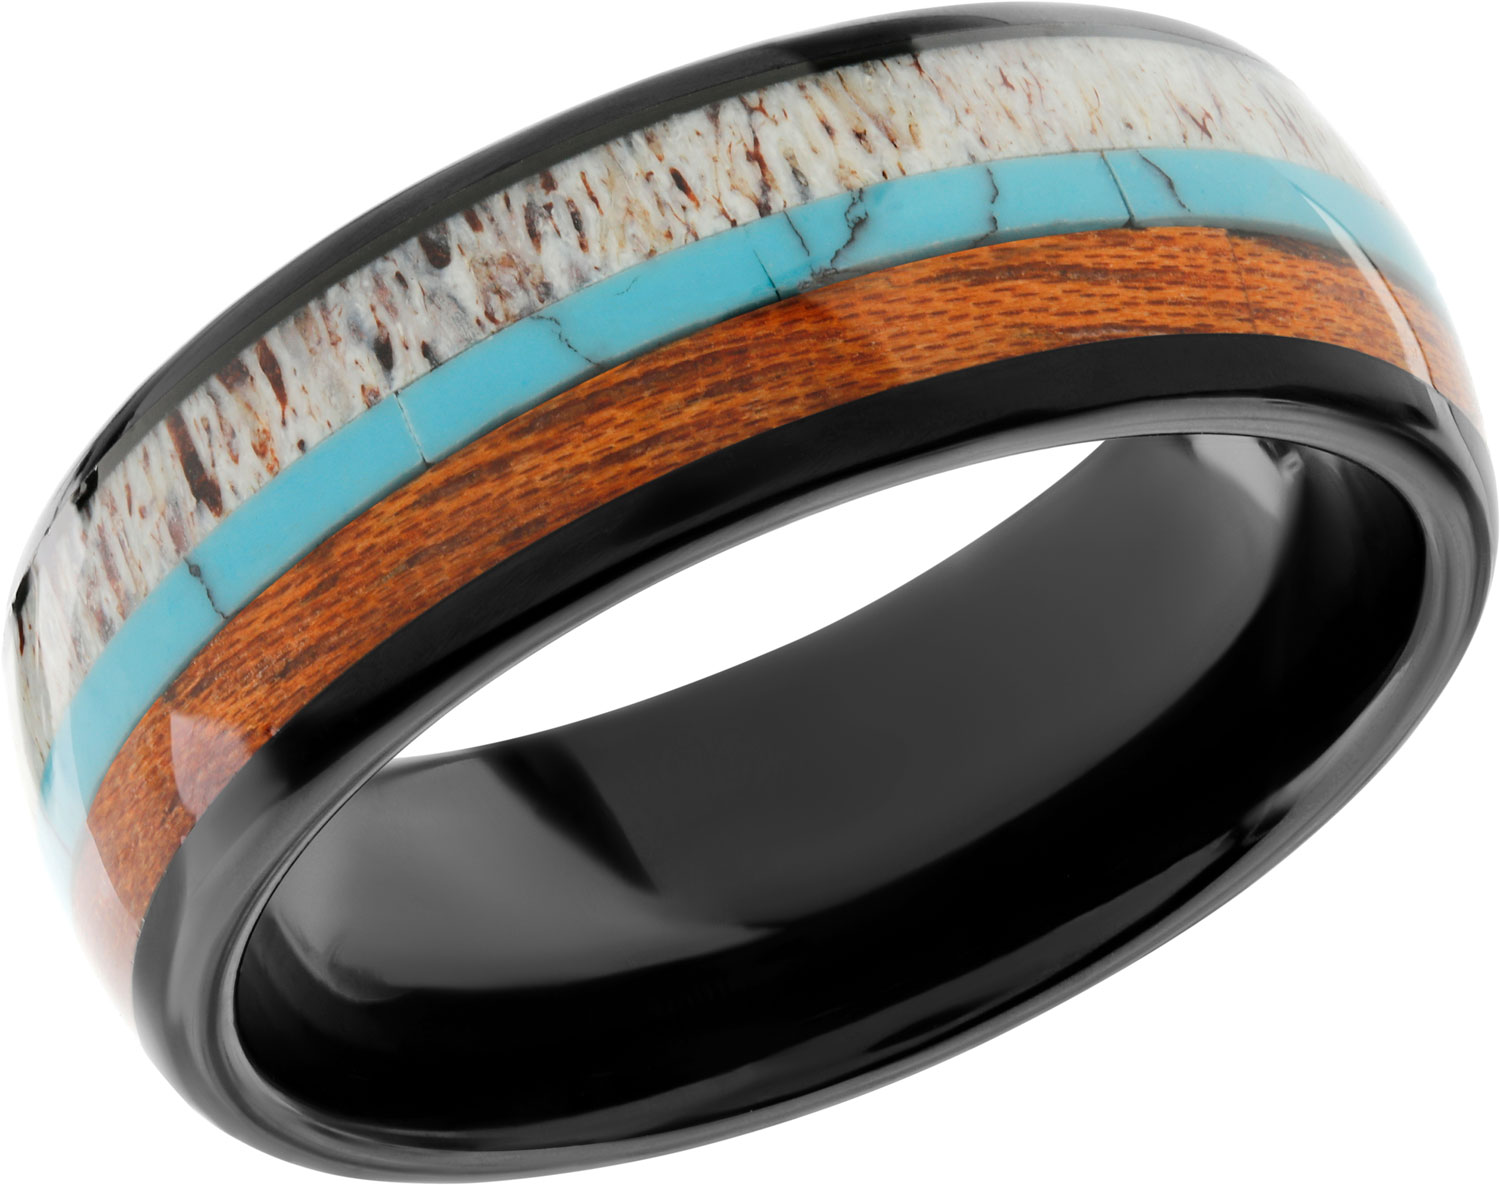 Мужское вольфрамовое кольцо POYA POYA-N-018 c деревянной отделкой, бирюзой